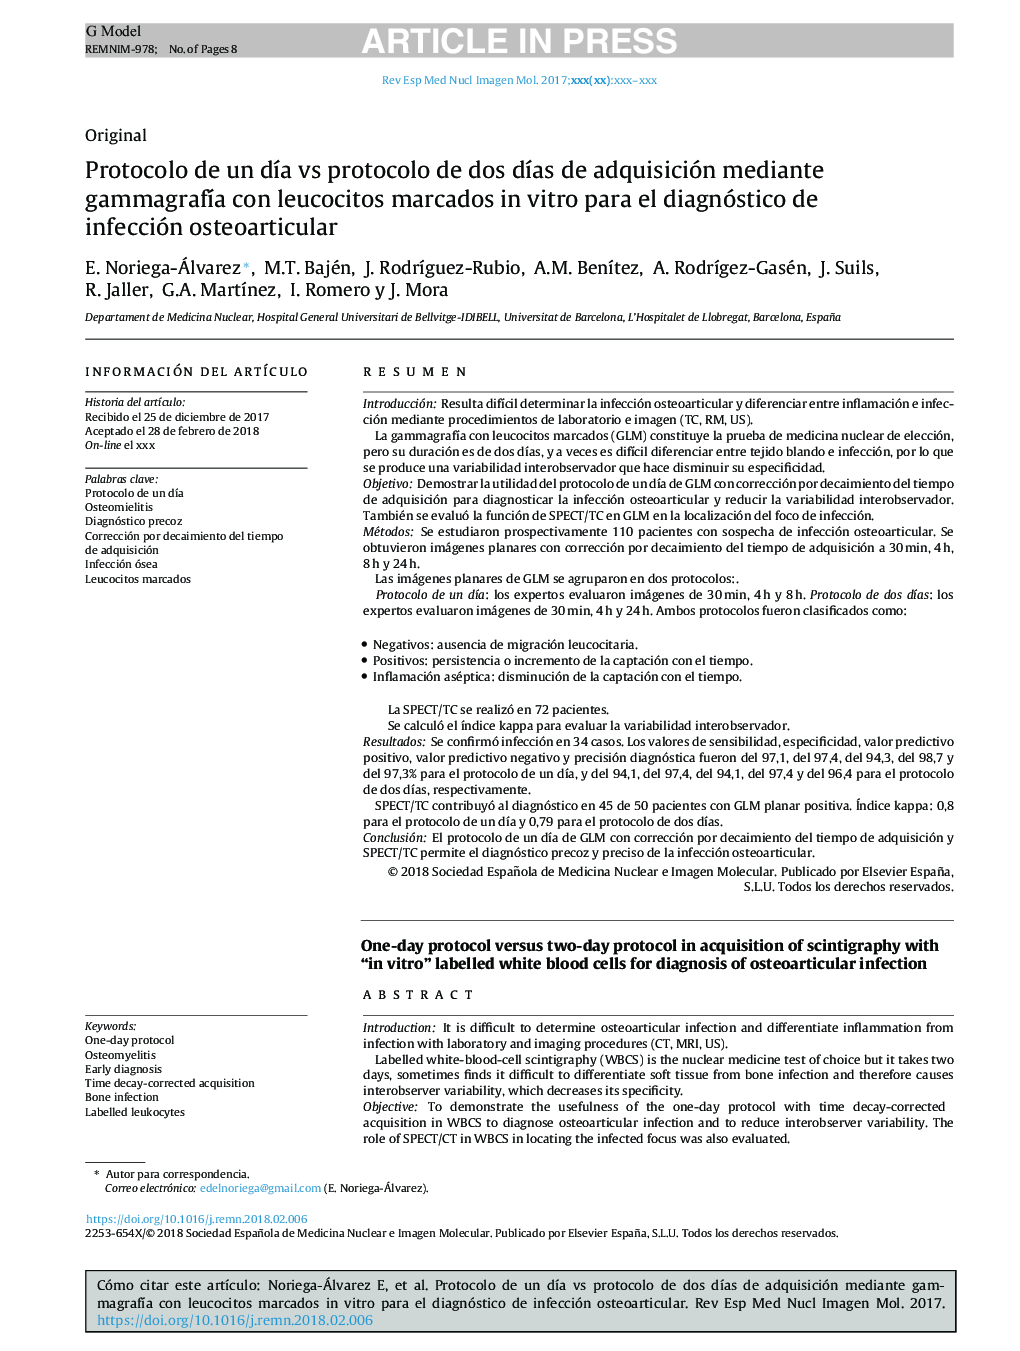 Protocolo de un dÃ­a vs protocolo de dos dÃ­as de adquisición mediante gammagrafÃ­a con leucocitos marcados in vitro para el diagnóstico de infección osteoarticular